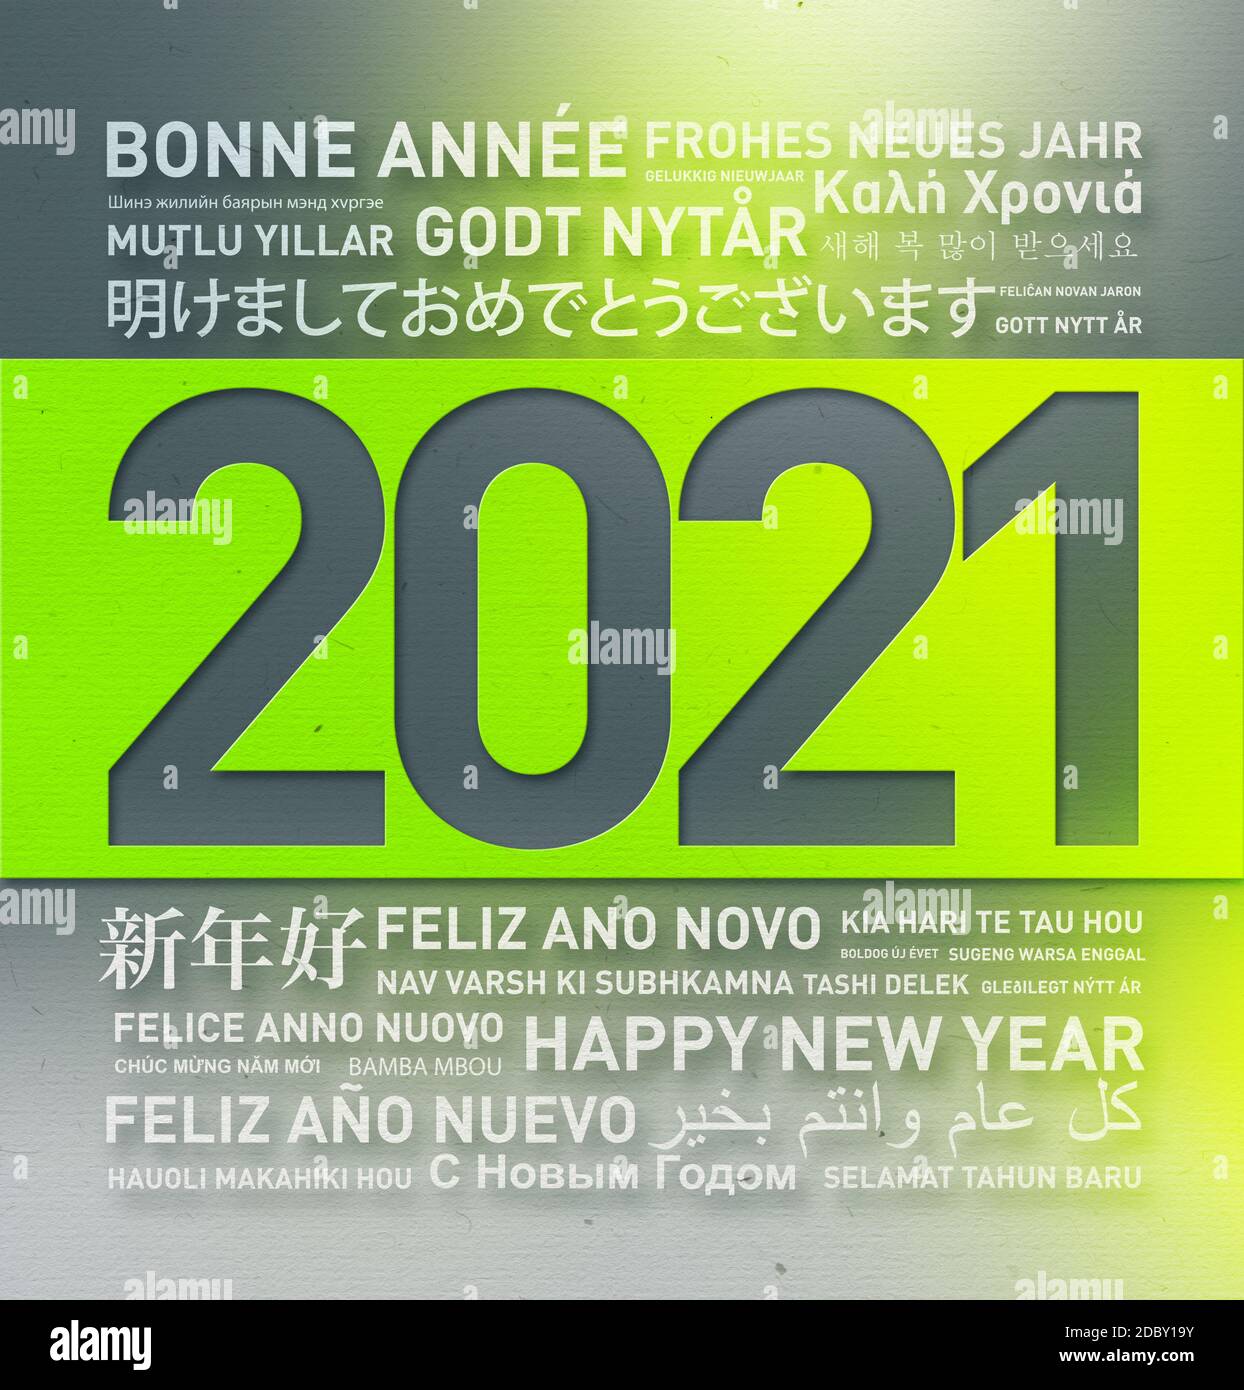 Bonne année 2021 carte de voeux du monde entier à différentes langues Banque D'Images